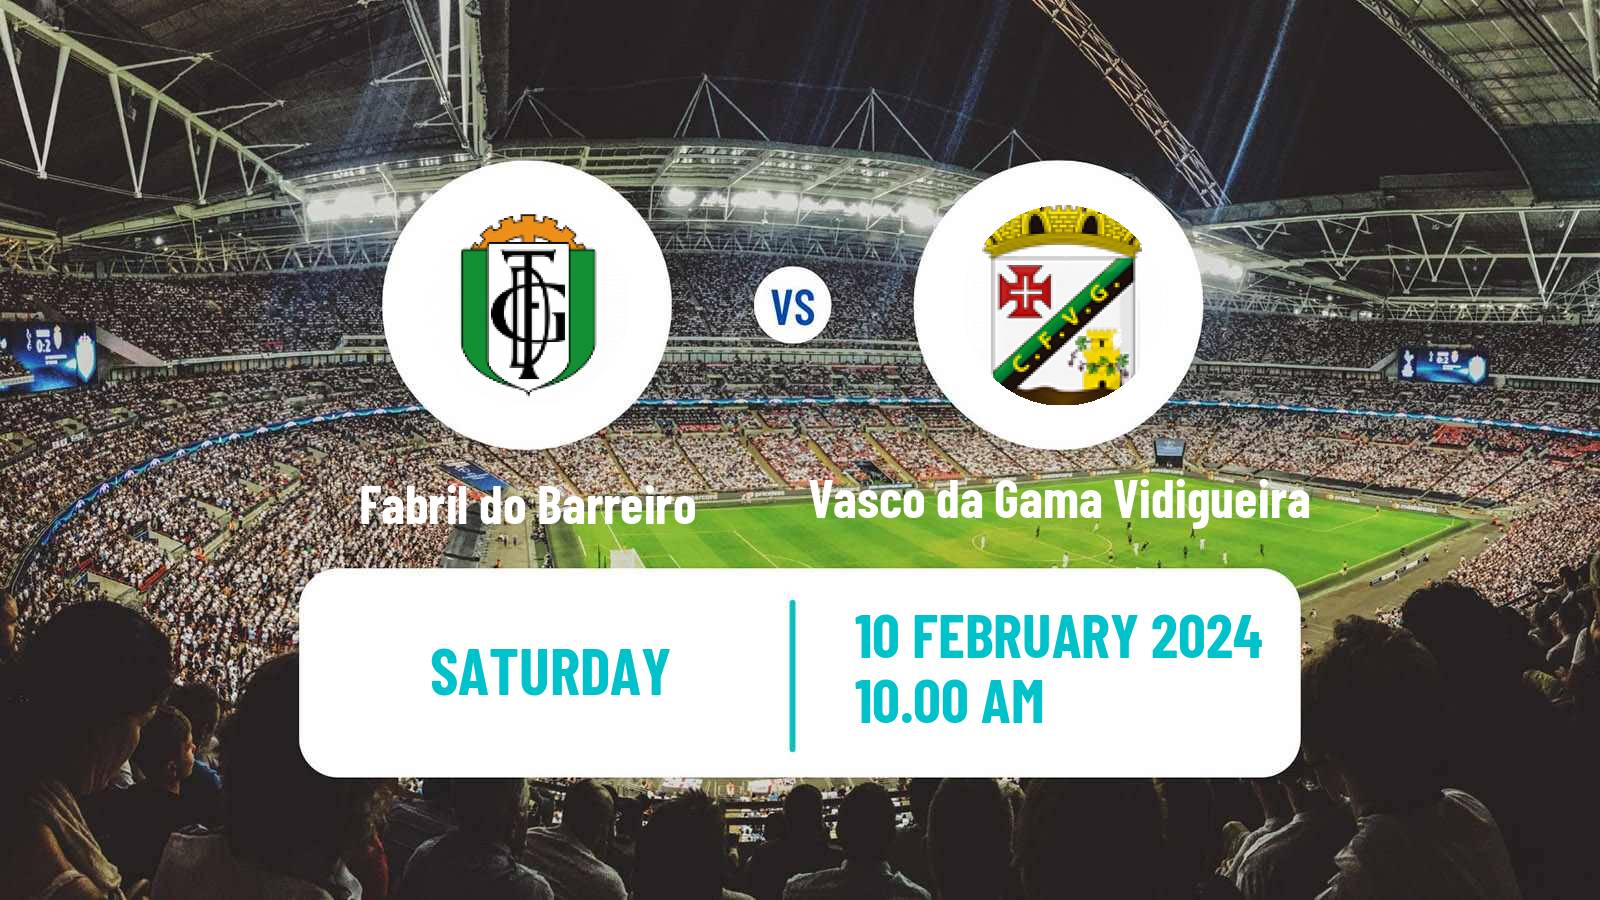 Soccer Campeonato de Portugal - Group D Fabril do Barreiro - Vasco da Gama Vidigueira